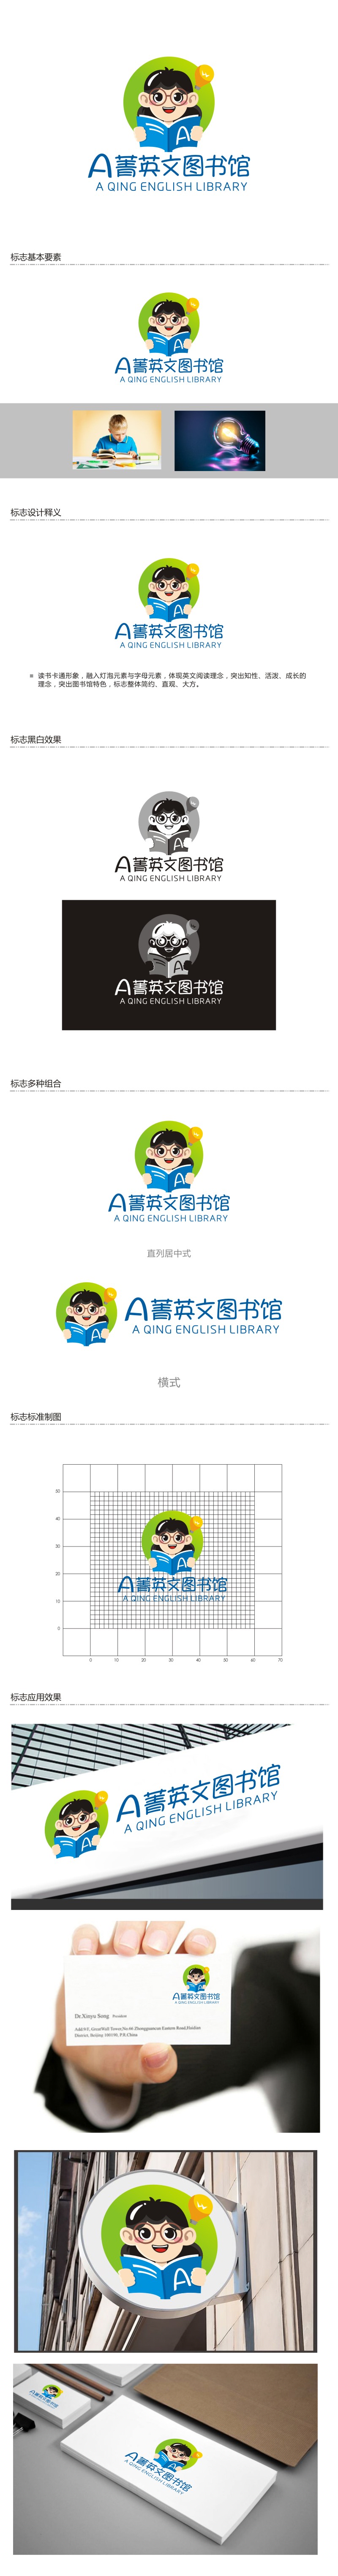 曾翼的A菁英文图书馆logo设计